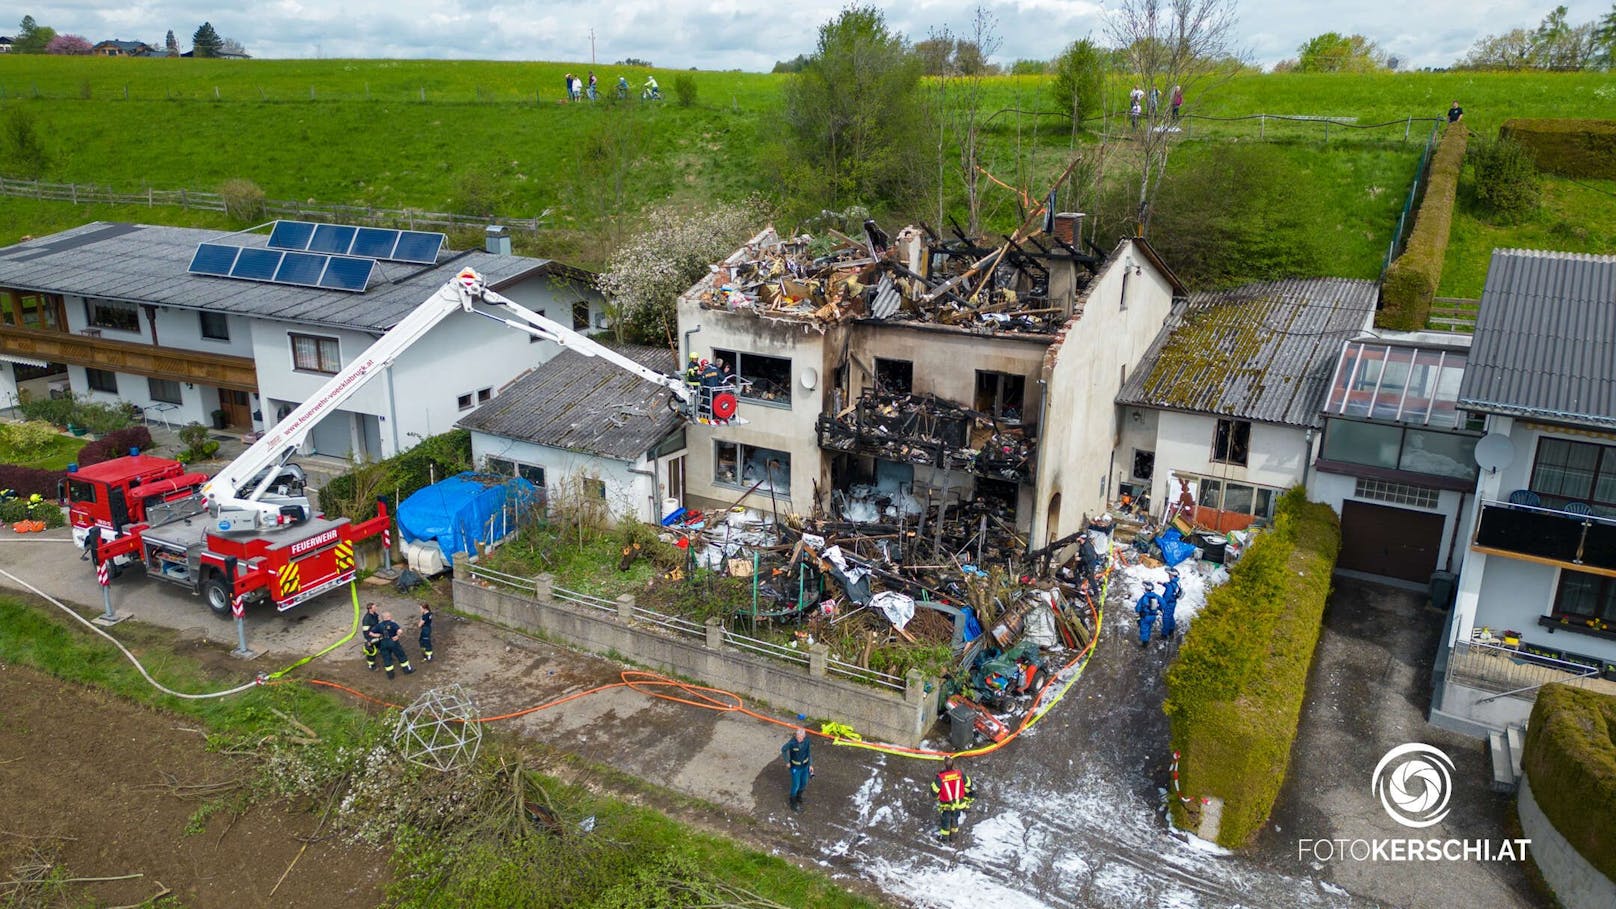 In einer Wohnsiedlung in der Ortschaft Rosenau, Gemeinde Seewalchen am Attersee, brach am Freitag um 18:15 Uhr in einem Haus aus bisher unbekannter Ursache ein Brand aus. In dem Gebäude fanden die Einsatzkräfte zwei Tote.